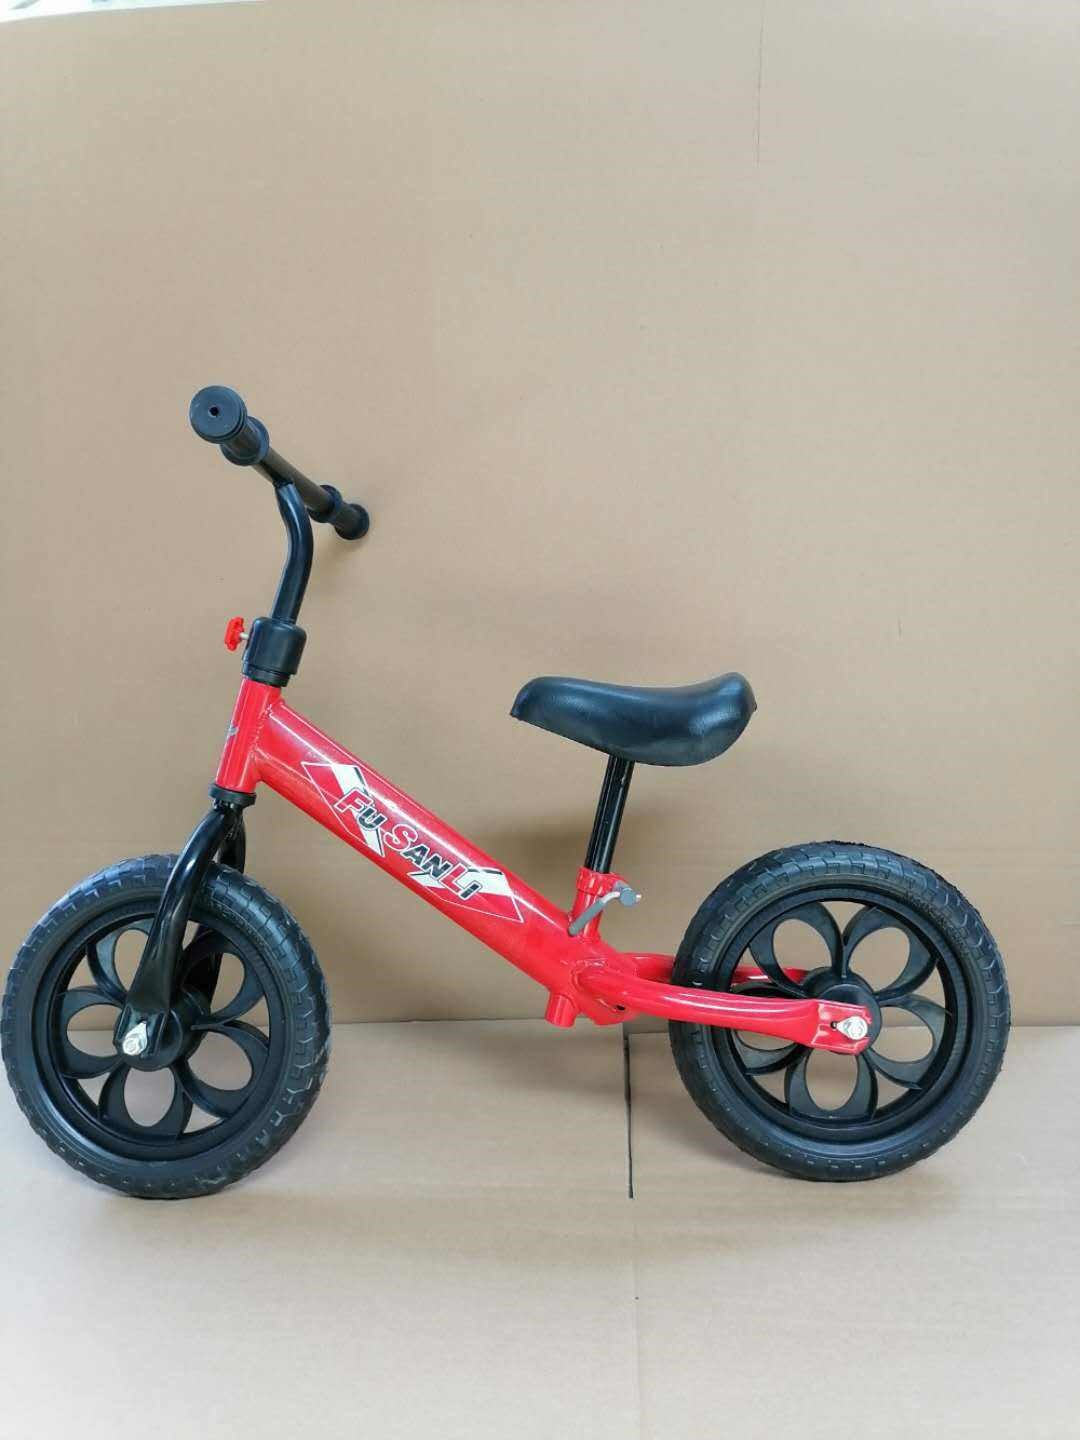 Xe tay ga cỡ lớn dành cho trẻ em là loại xe thăng bằng lưỡng dụng không cần bàn đạp, thiết kế đơn giản. Xe nôi nhẹ và dày để tự giữ - Smart Scooter